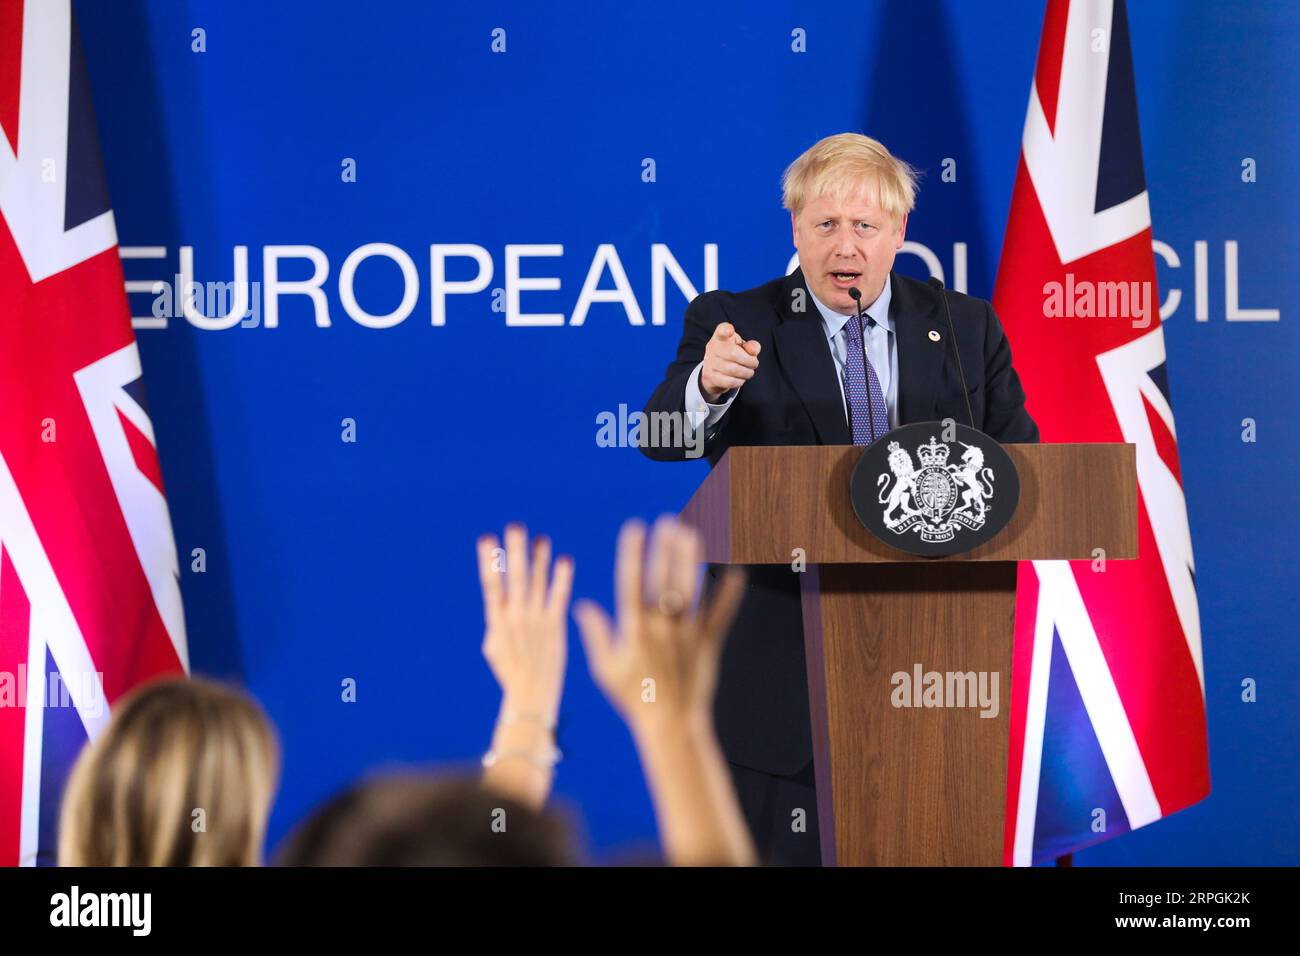 191017 -- BRUXELLES, le 17 octobre 2019 -- le Premier ministre britannique Boris Johnson assiste à une conférence de presse lors d'un sommet de l'UE à Bruxelles, en Belgique, le 17 octobre 2019. Le sommet de deux jours a débuté jeudi. L'Union européenne l'UE et la Grande-Bretagne ont conclu un nouvel accord sur le Brexit, a déclaré jeudi le président de la Commission européenne Jean-Claude Juncker. Zheng Huansong BELGIQUE-BRUXELLES-UE-SOMMET-NOUVEL ACCORD SUR LE BREXIT ZhangxCheng PUBLICATIONxNOTxINxCHN Banque D'Images